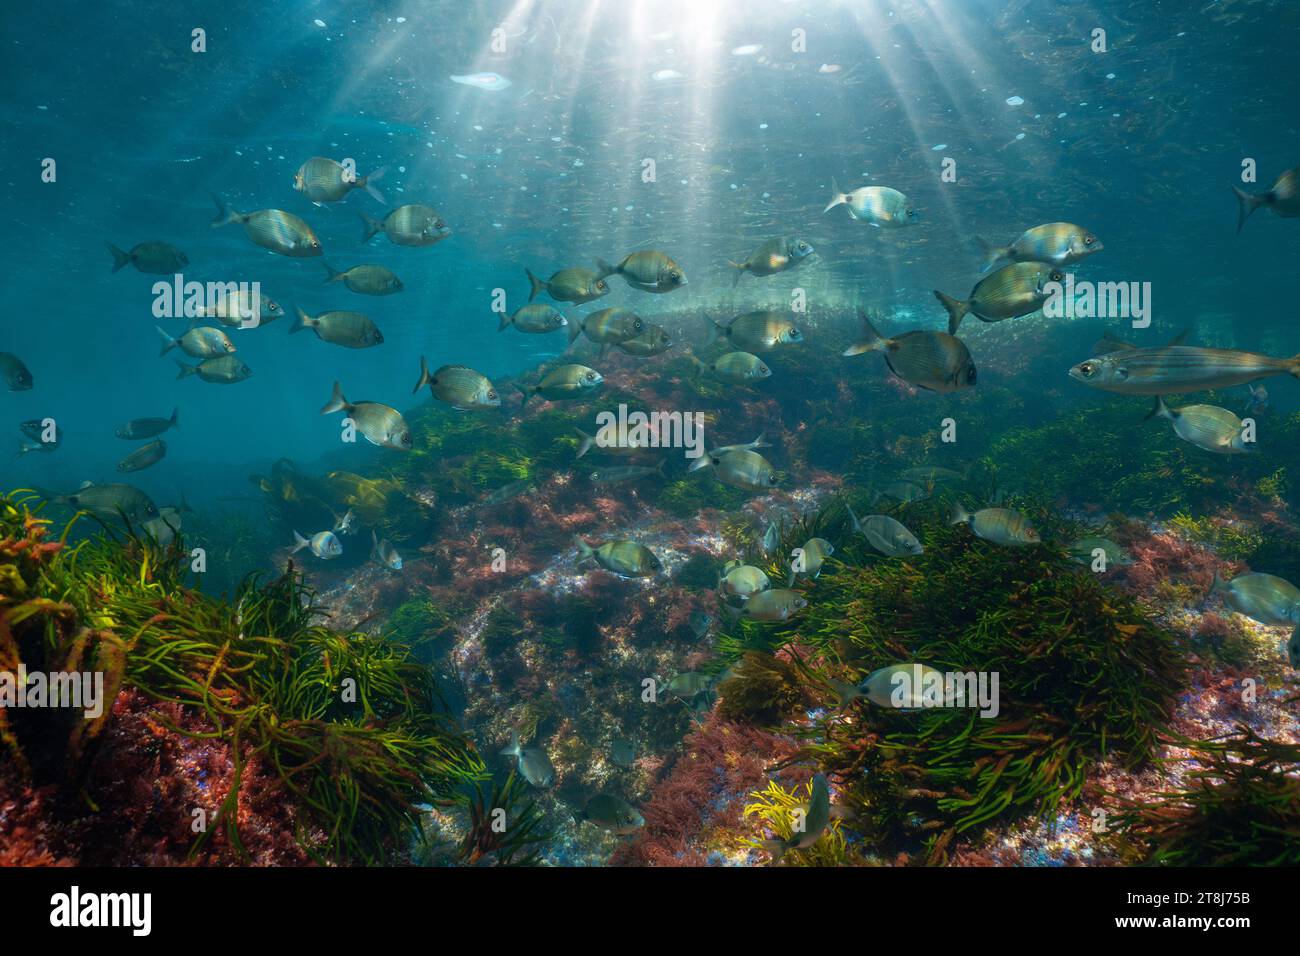 Una escuela de peces con luz solar paisaje marino bajo el agua en el océano Atlántico (peces blancos), escena natural, España, Galicia, Rías Baixas Foto de stock